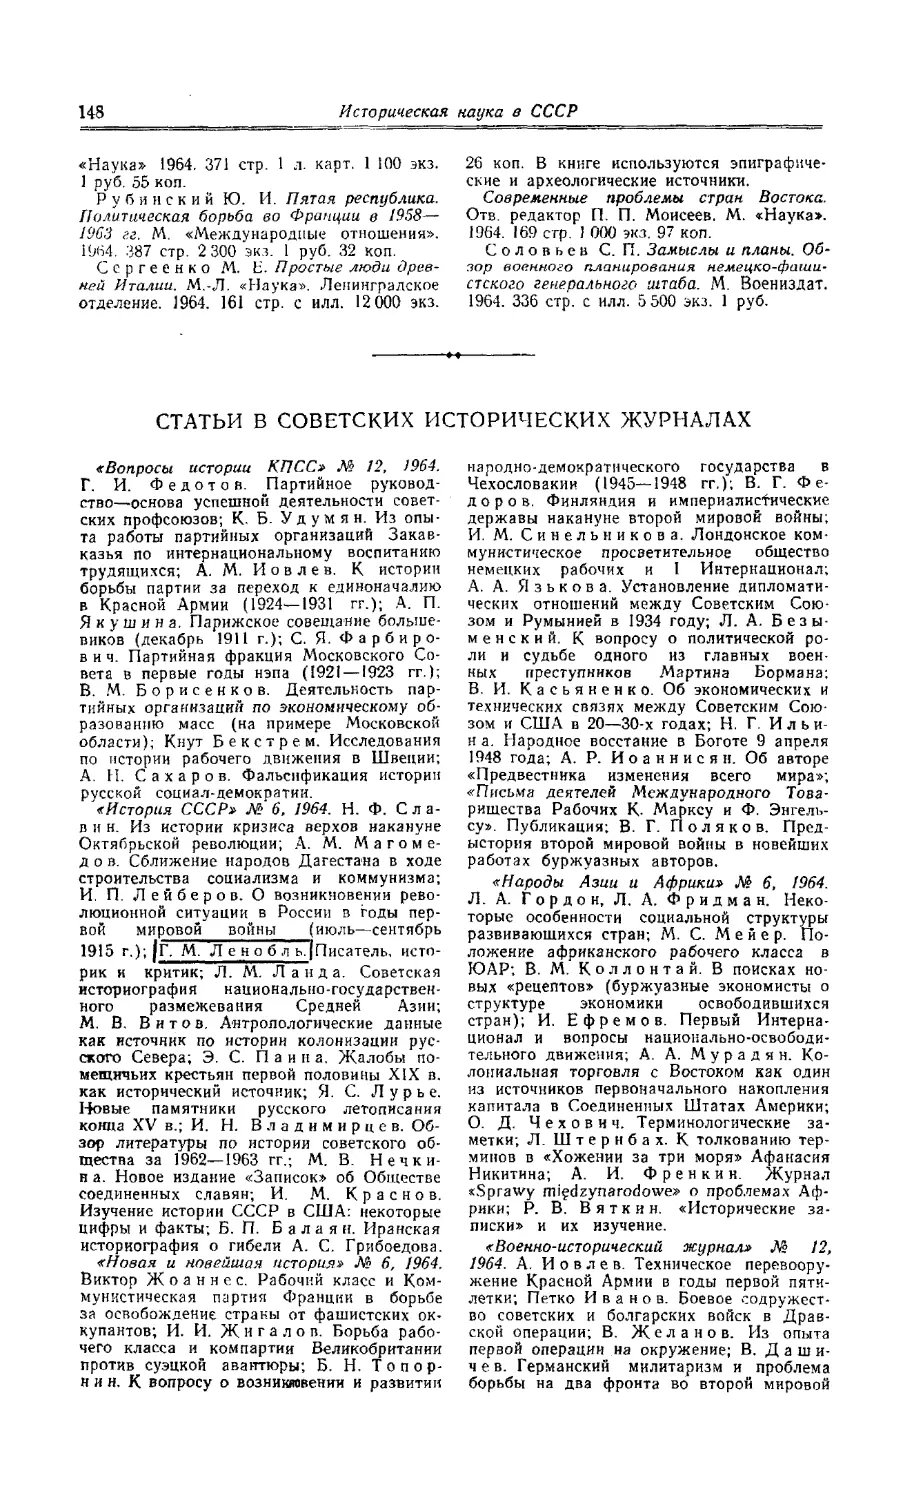 Статьи в советских исторических журналах